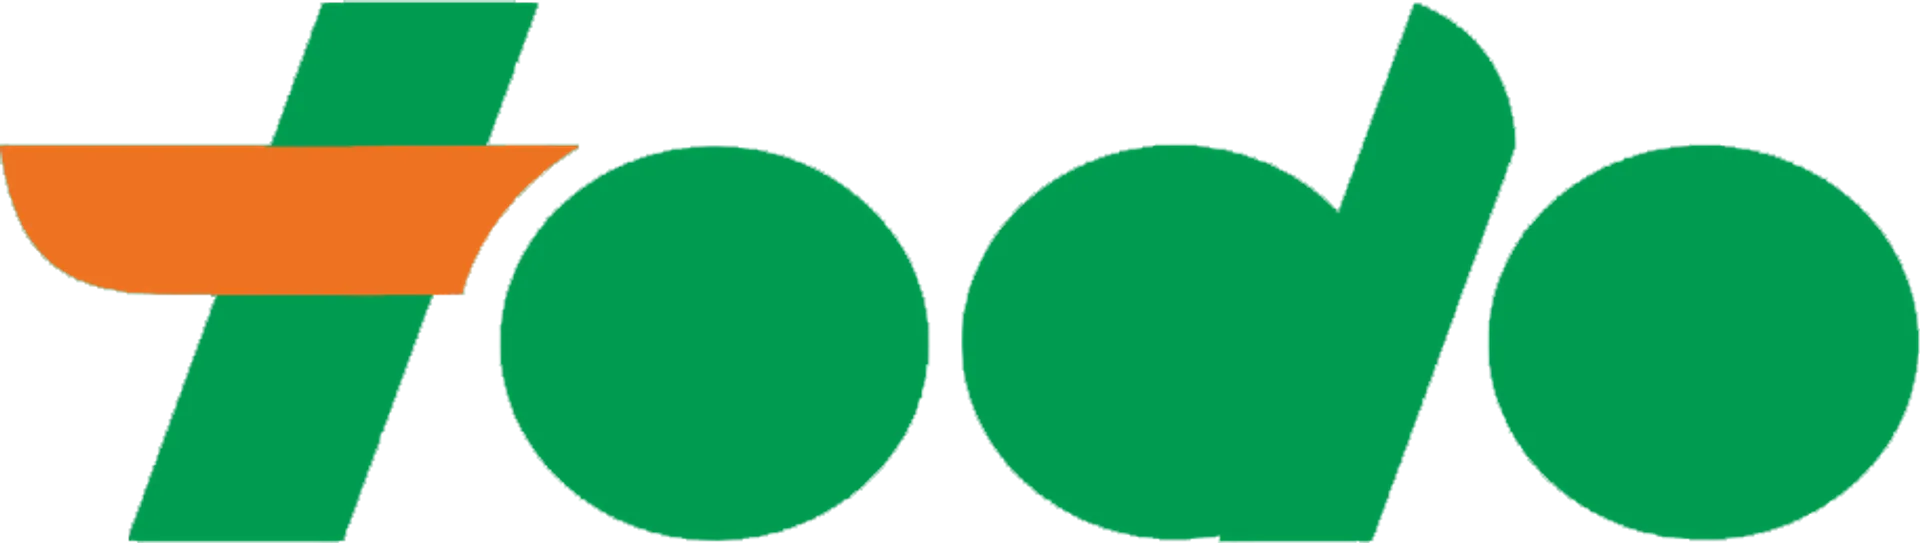 SUPERMERCADOS TODO logo